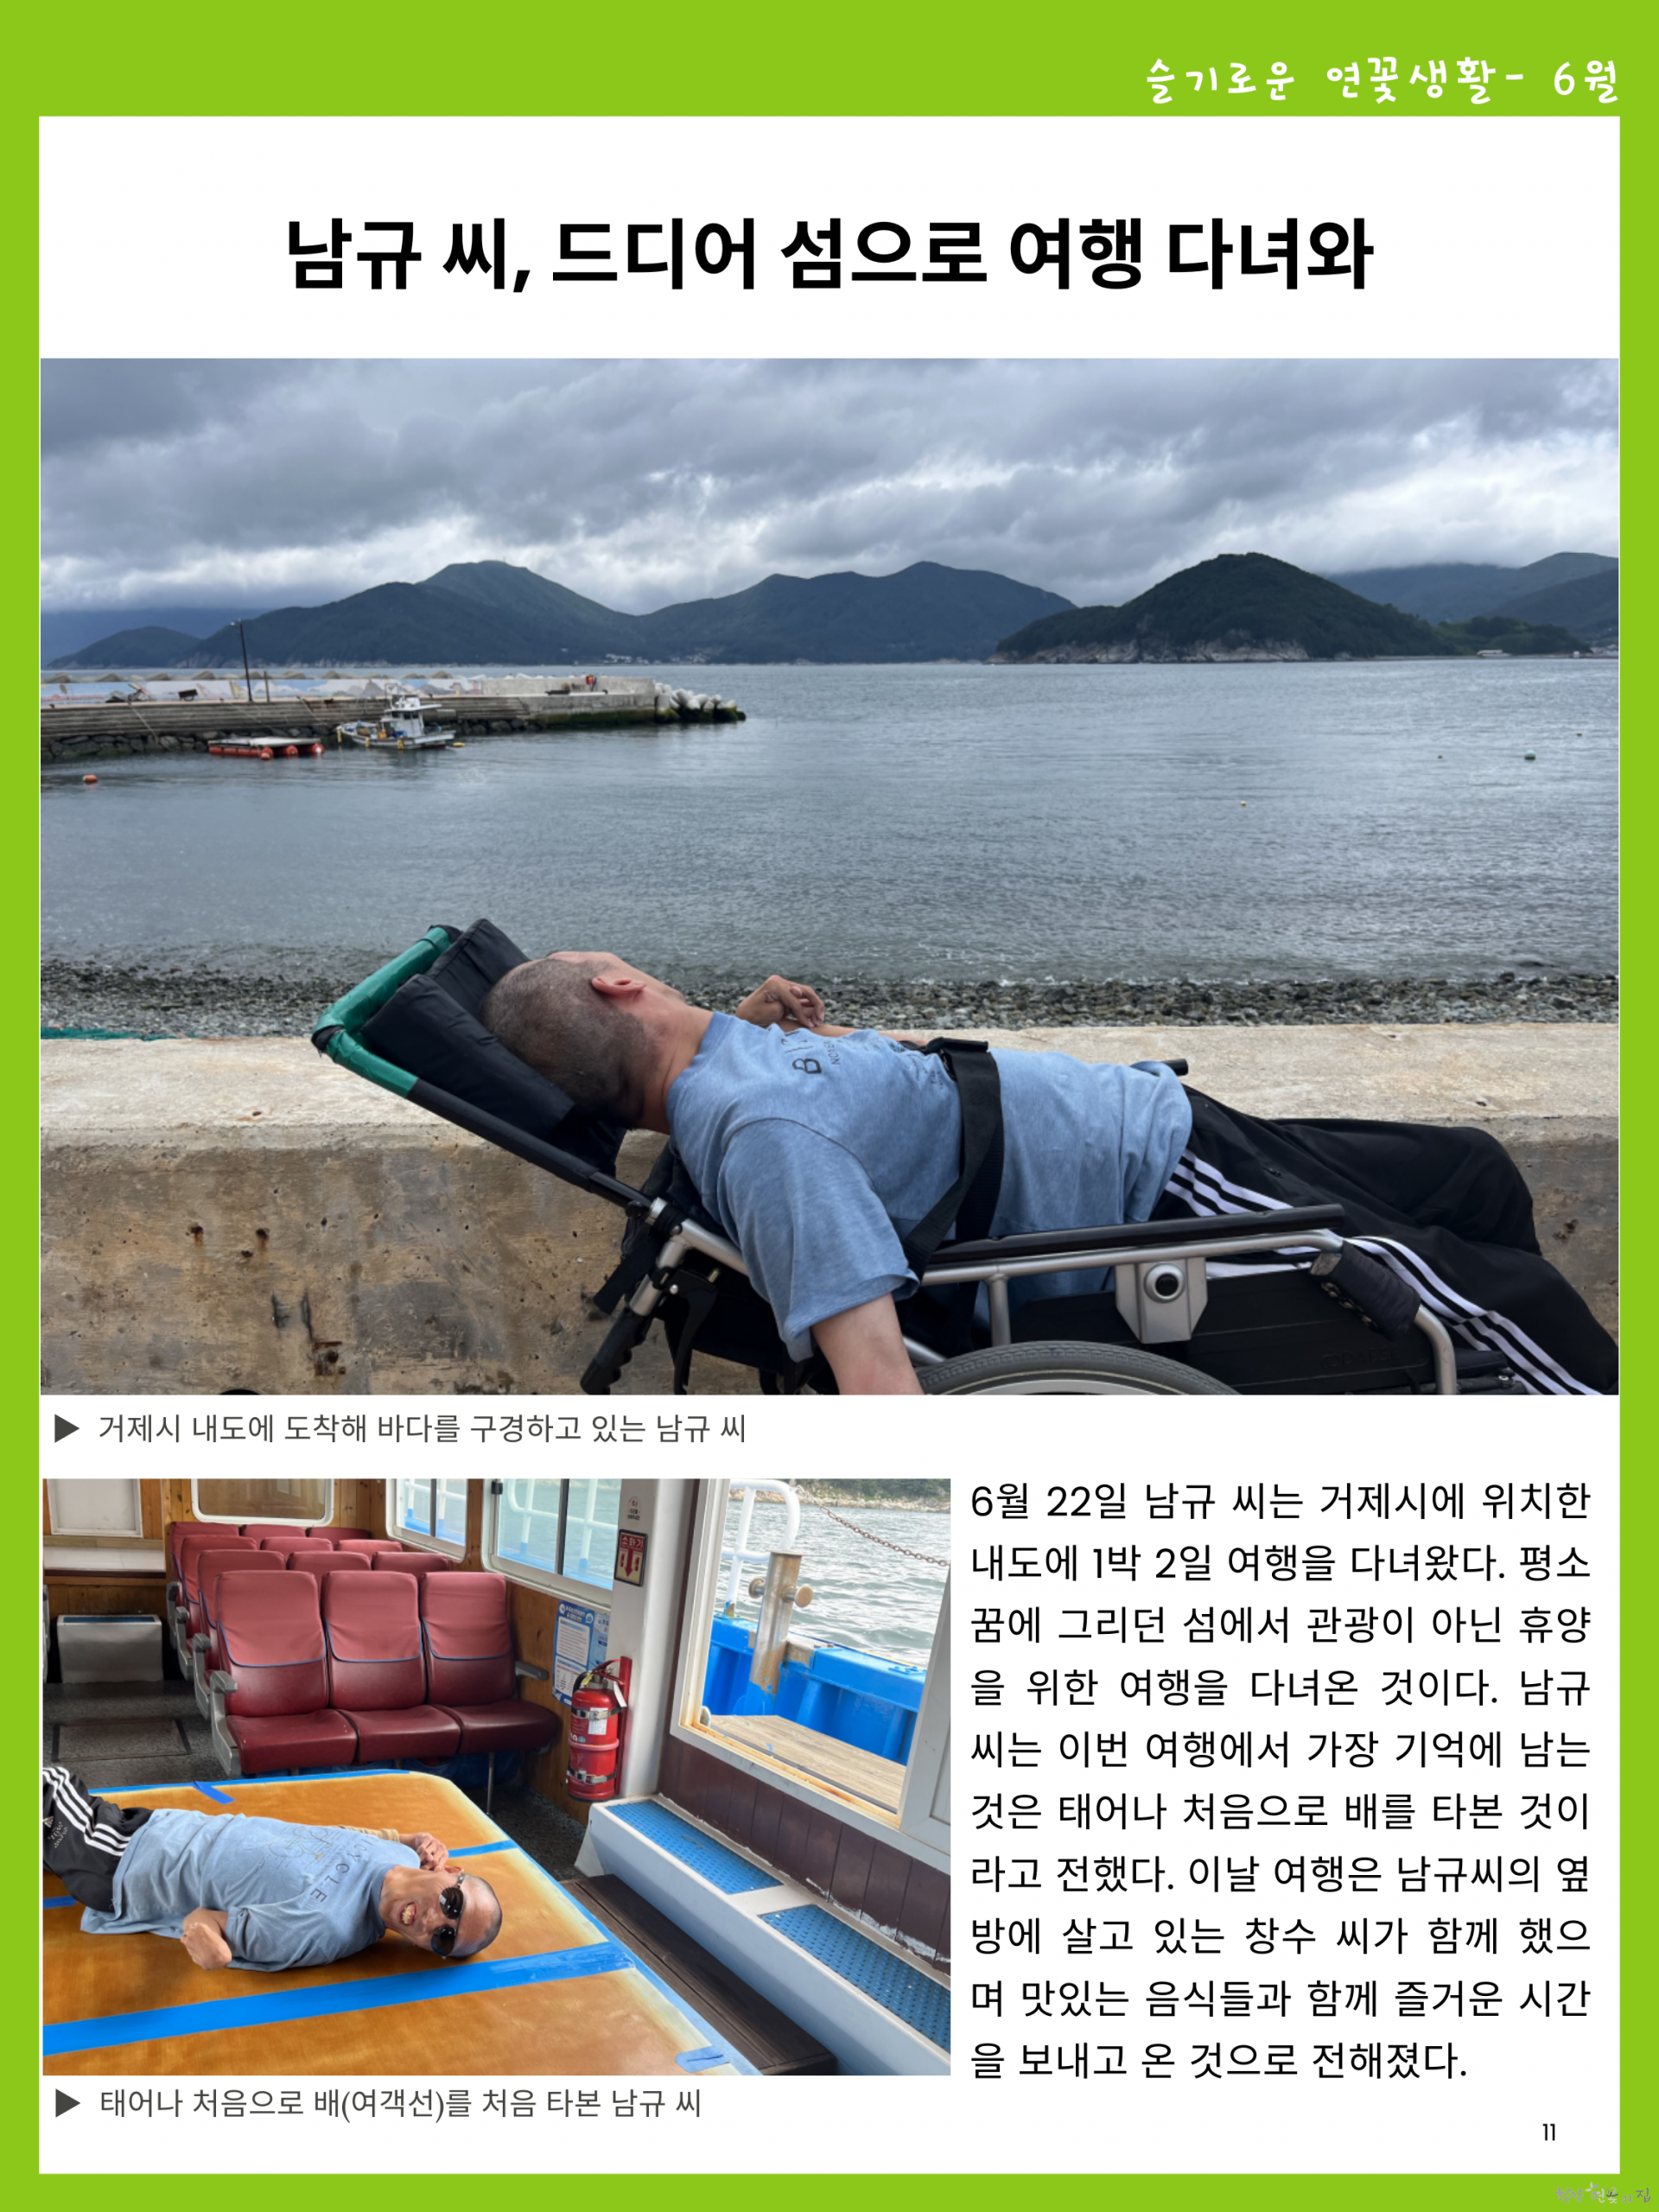 11. 슬기로운 연꽃생활 02 남규 씨, 드디어 섬으로 여행 다녀와.png